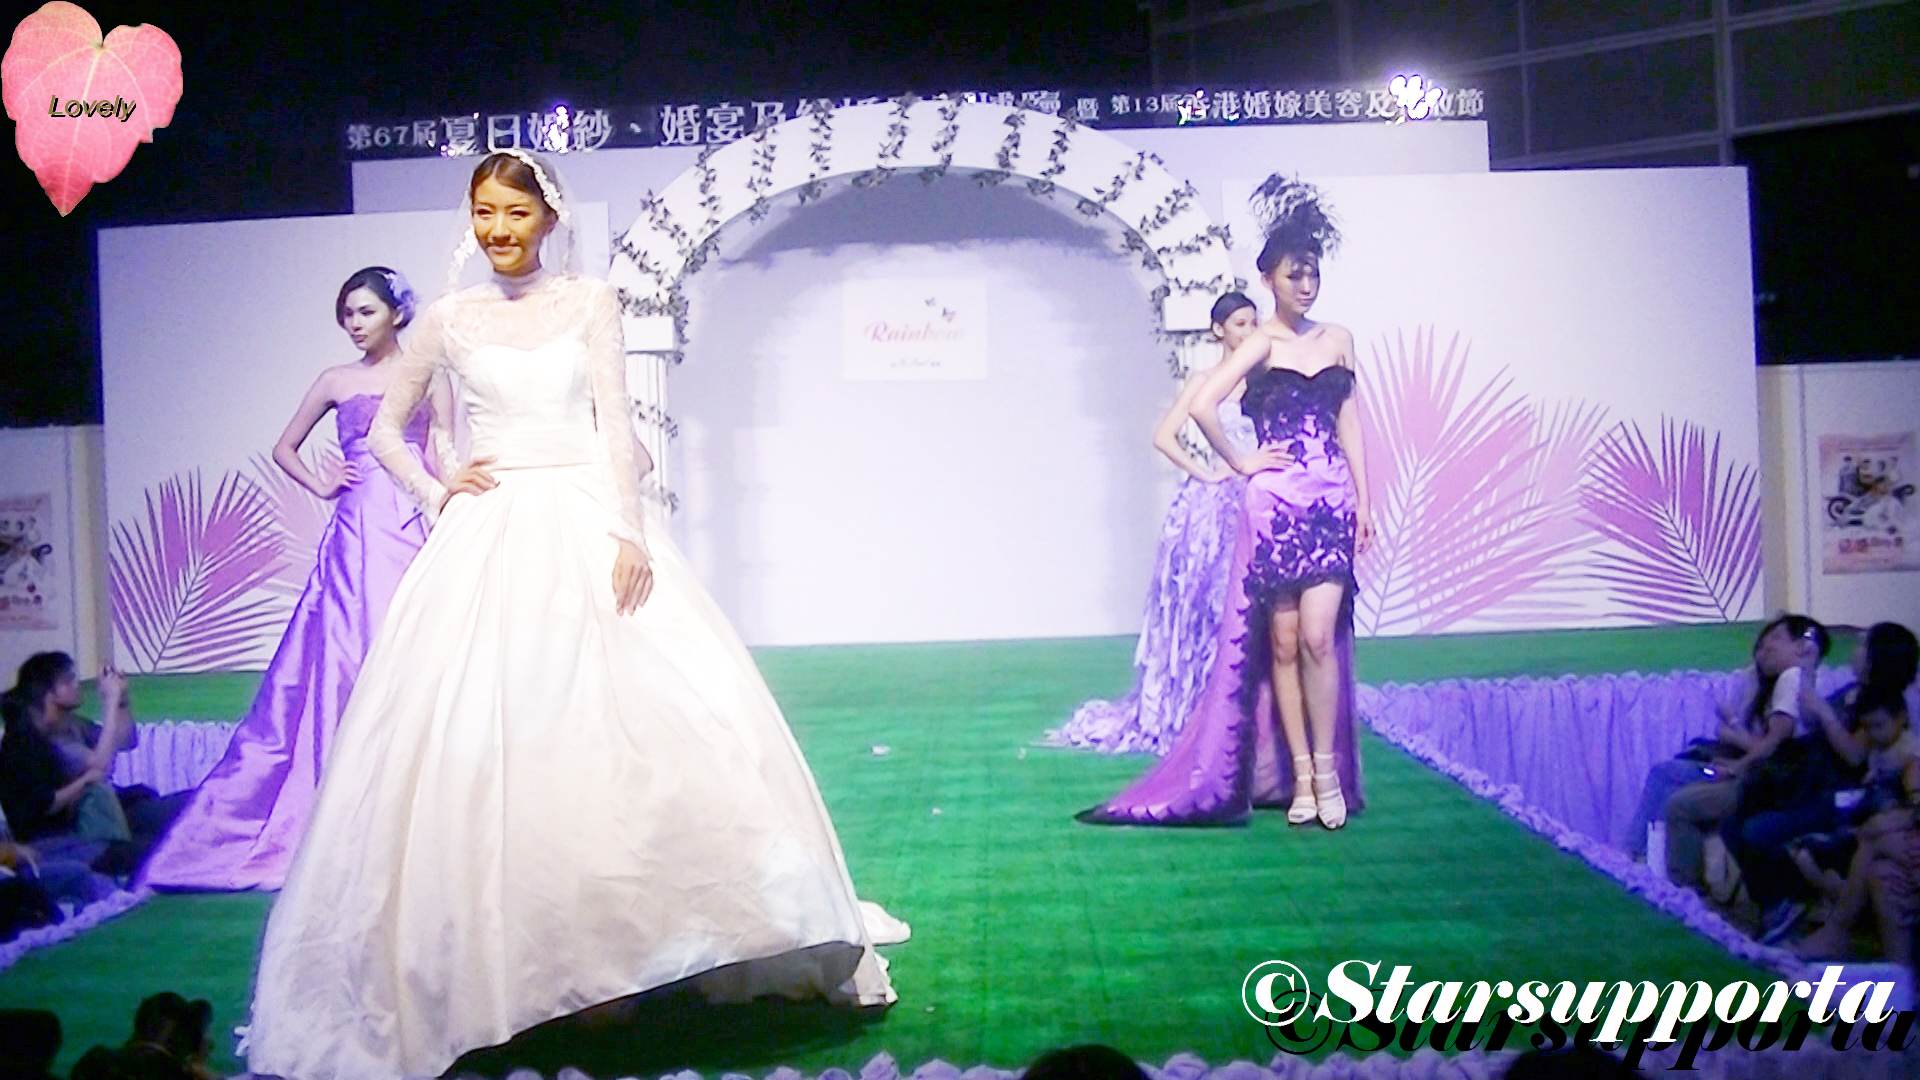 20120609 夏日婚紗、婚宴及結婚服務博覽 - Kir Royal: Rainbow @ 香港會議展覽中心 HKCEC (video)